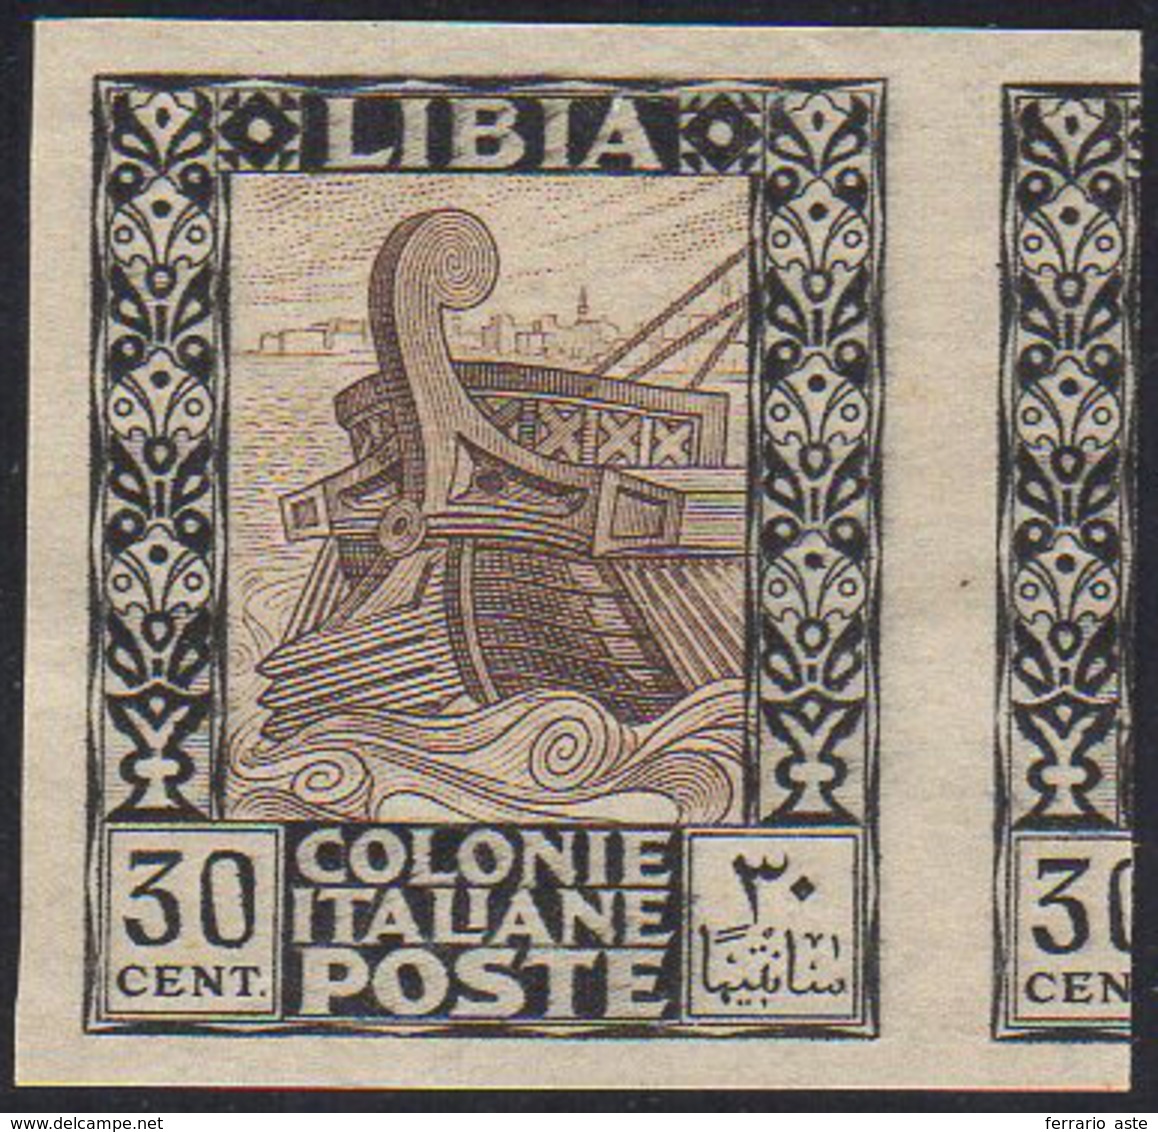 1924 - 30 Cent. Pittorica, Non Dentellato (50K), Nuovo Senza Gomma, Perfetto. Rarissimo.... - Libya